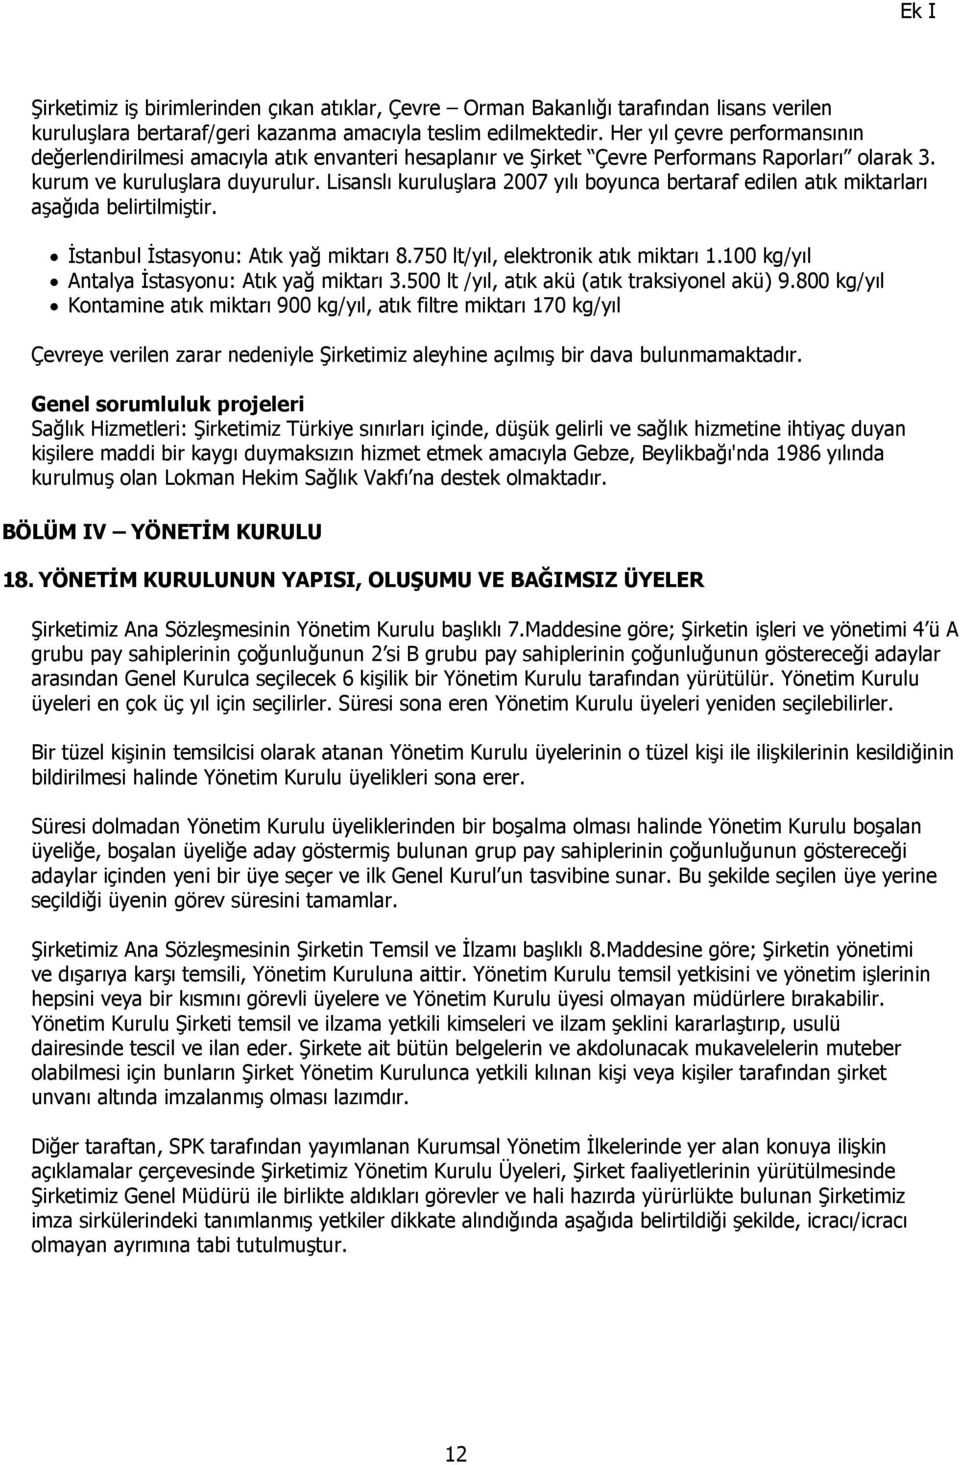 Lisanslı kuruluşlara 2007 yılı boyunca bertaraf edilen atık miktarları aşağıda belirtilmiştir. İstanbul İstasyonu: Atık yağ miktarı 8.750 lt/yıl, elektronik atık miktarı 1.